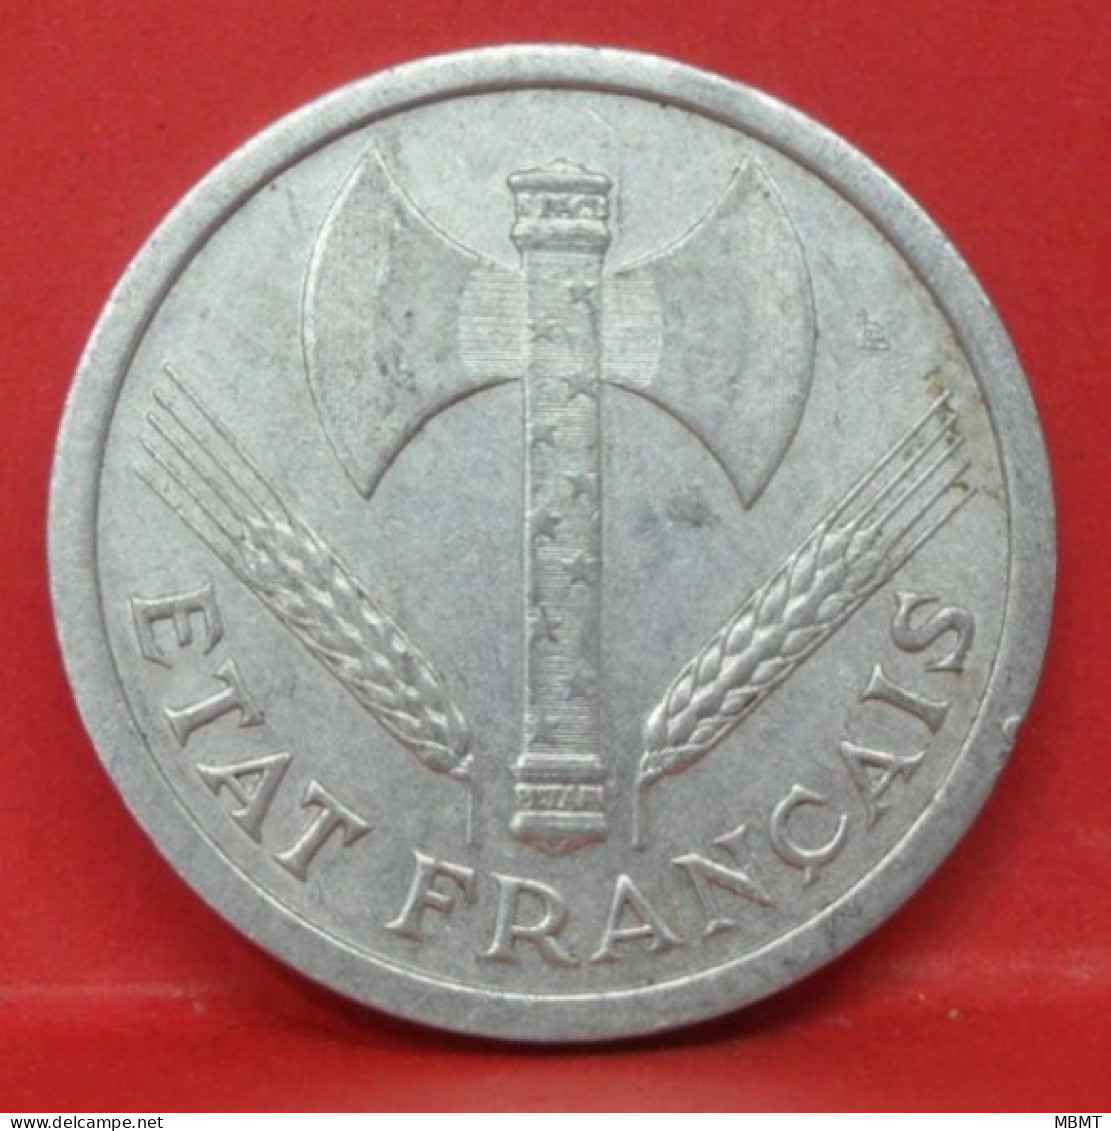 2 Francs état Français 1943 - TTB - Pièce Monnaie France - Article N°771 - 2 Francs